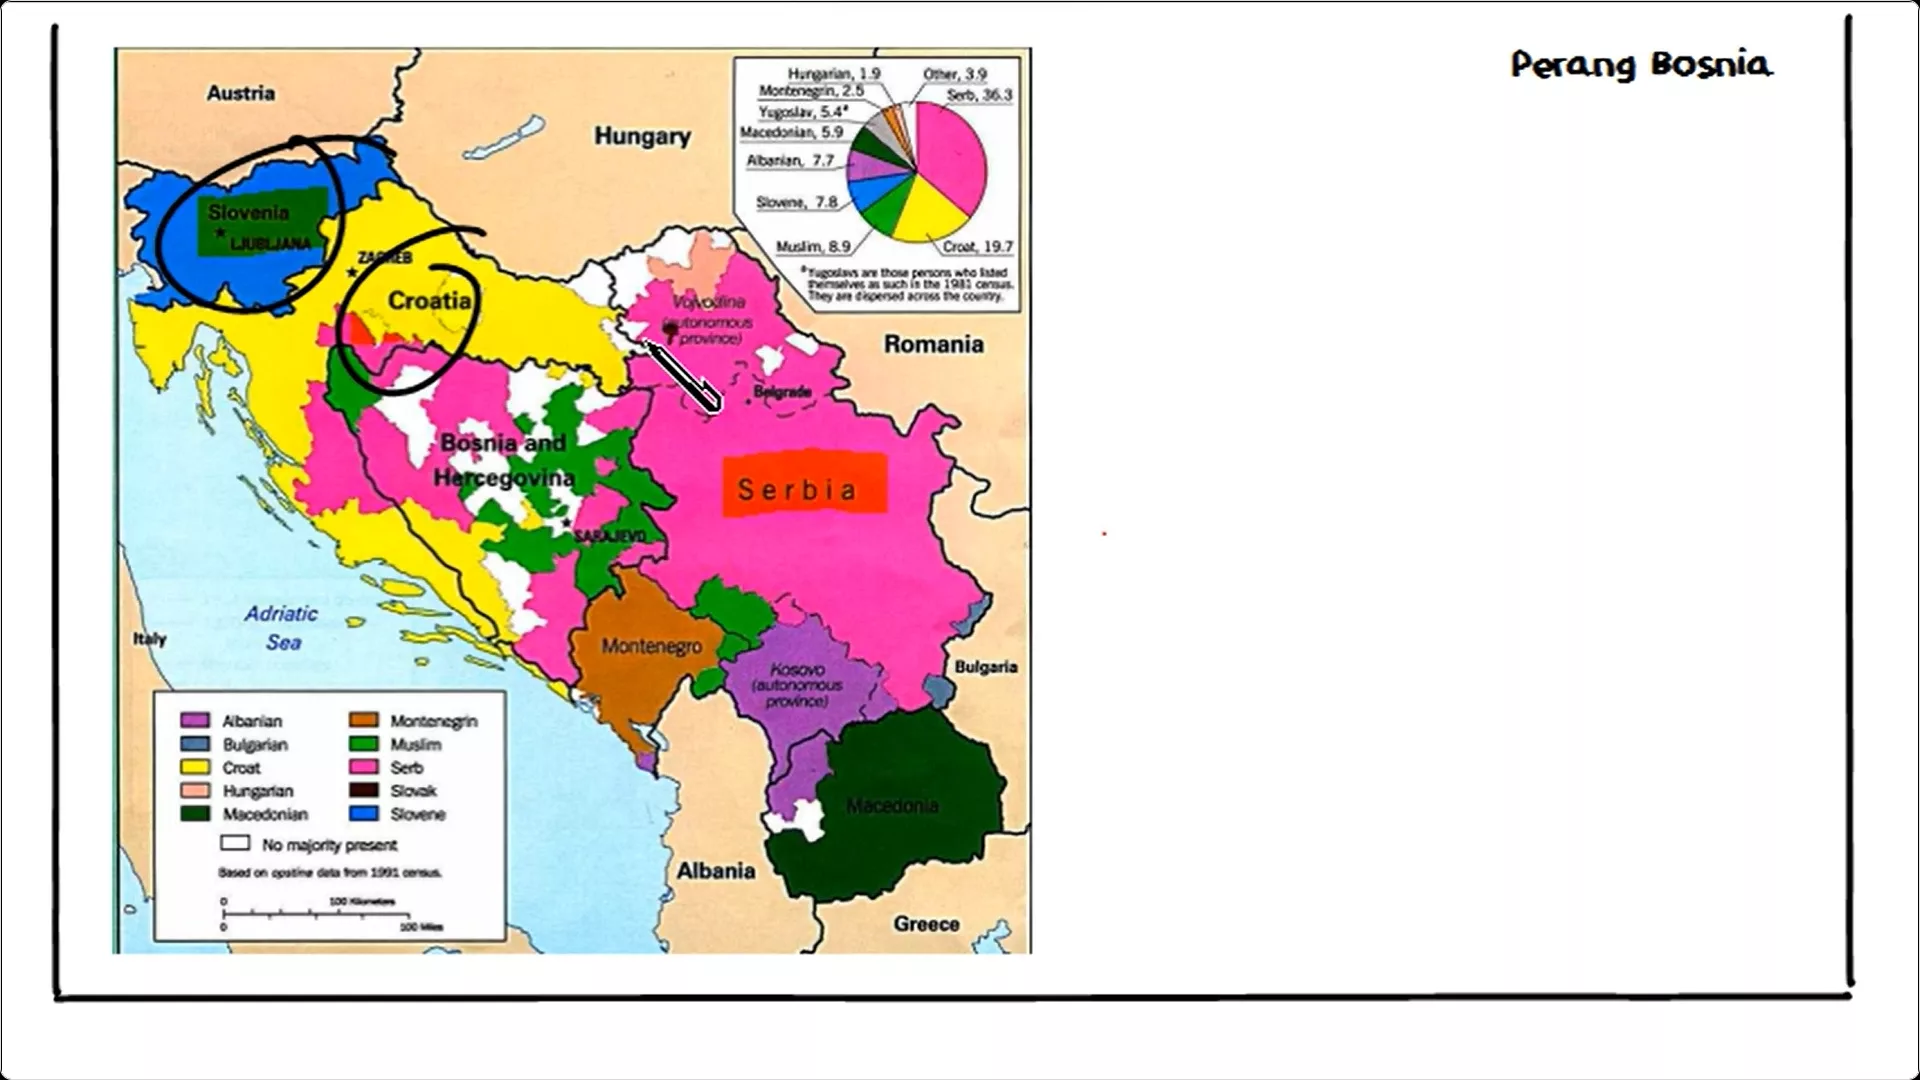 Peta Slovenia dan Kroasia yang mengalami konflik perebutan wilayah teritorial